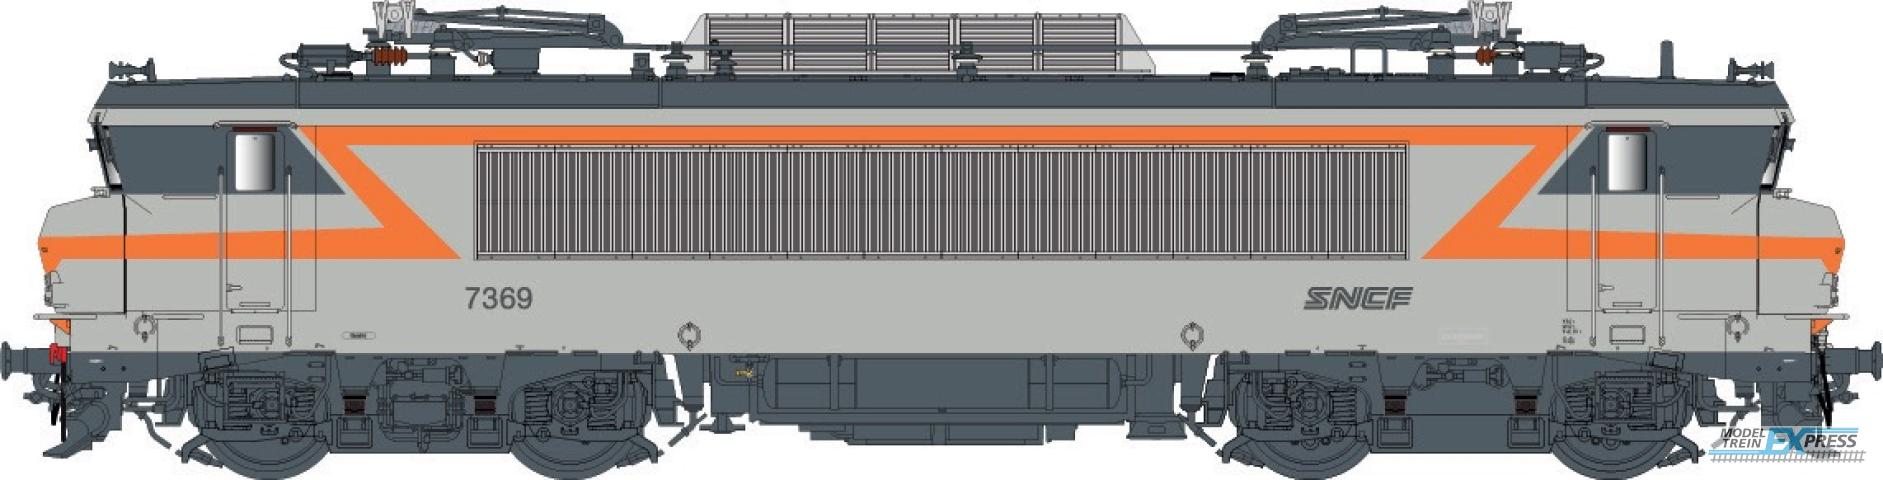 LS Models 11204S BB 7200, grijs/oranje, noedles logo, front nummer, grote cabine  /  Ep. V  /  SNCF  /  HO  /  DC SOUND  /  1 P.